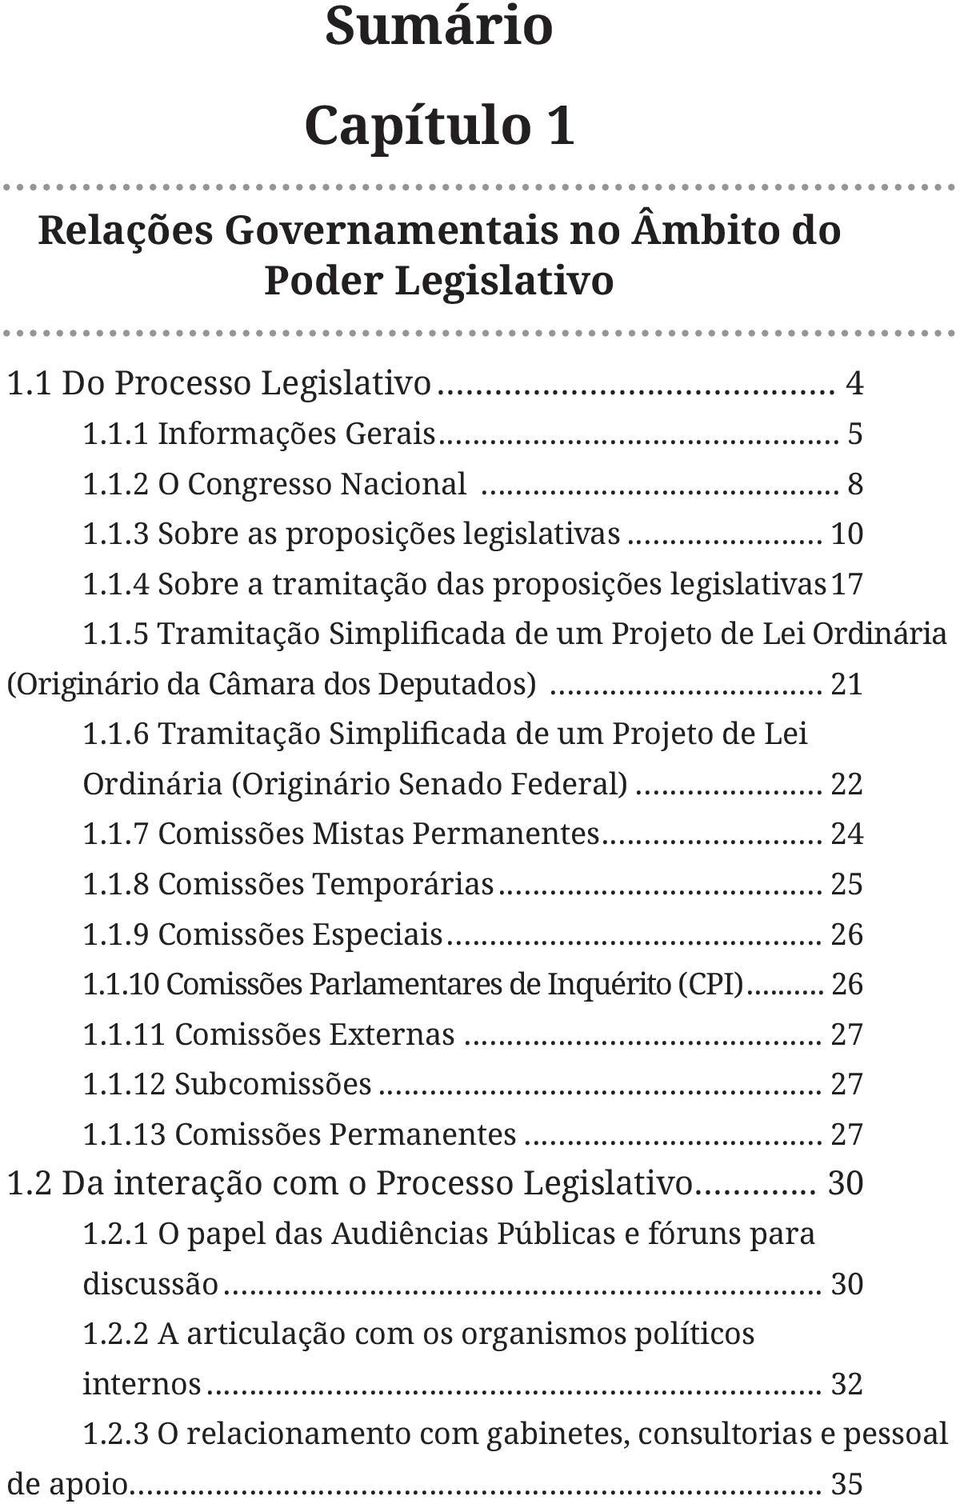 .. 25 1.1.9 Comissões Especiais... 26 1.1.10 Comissões Parlamentares de Inquérito (CPI)... 26 1.1.11 Comissões Externas... 27 1.1.12 Subcomissões... 27 1.1.13 Comissões Permanentes... 27 1.2 Da interação com o Processo Legislativo.